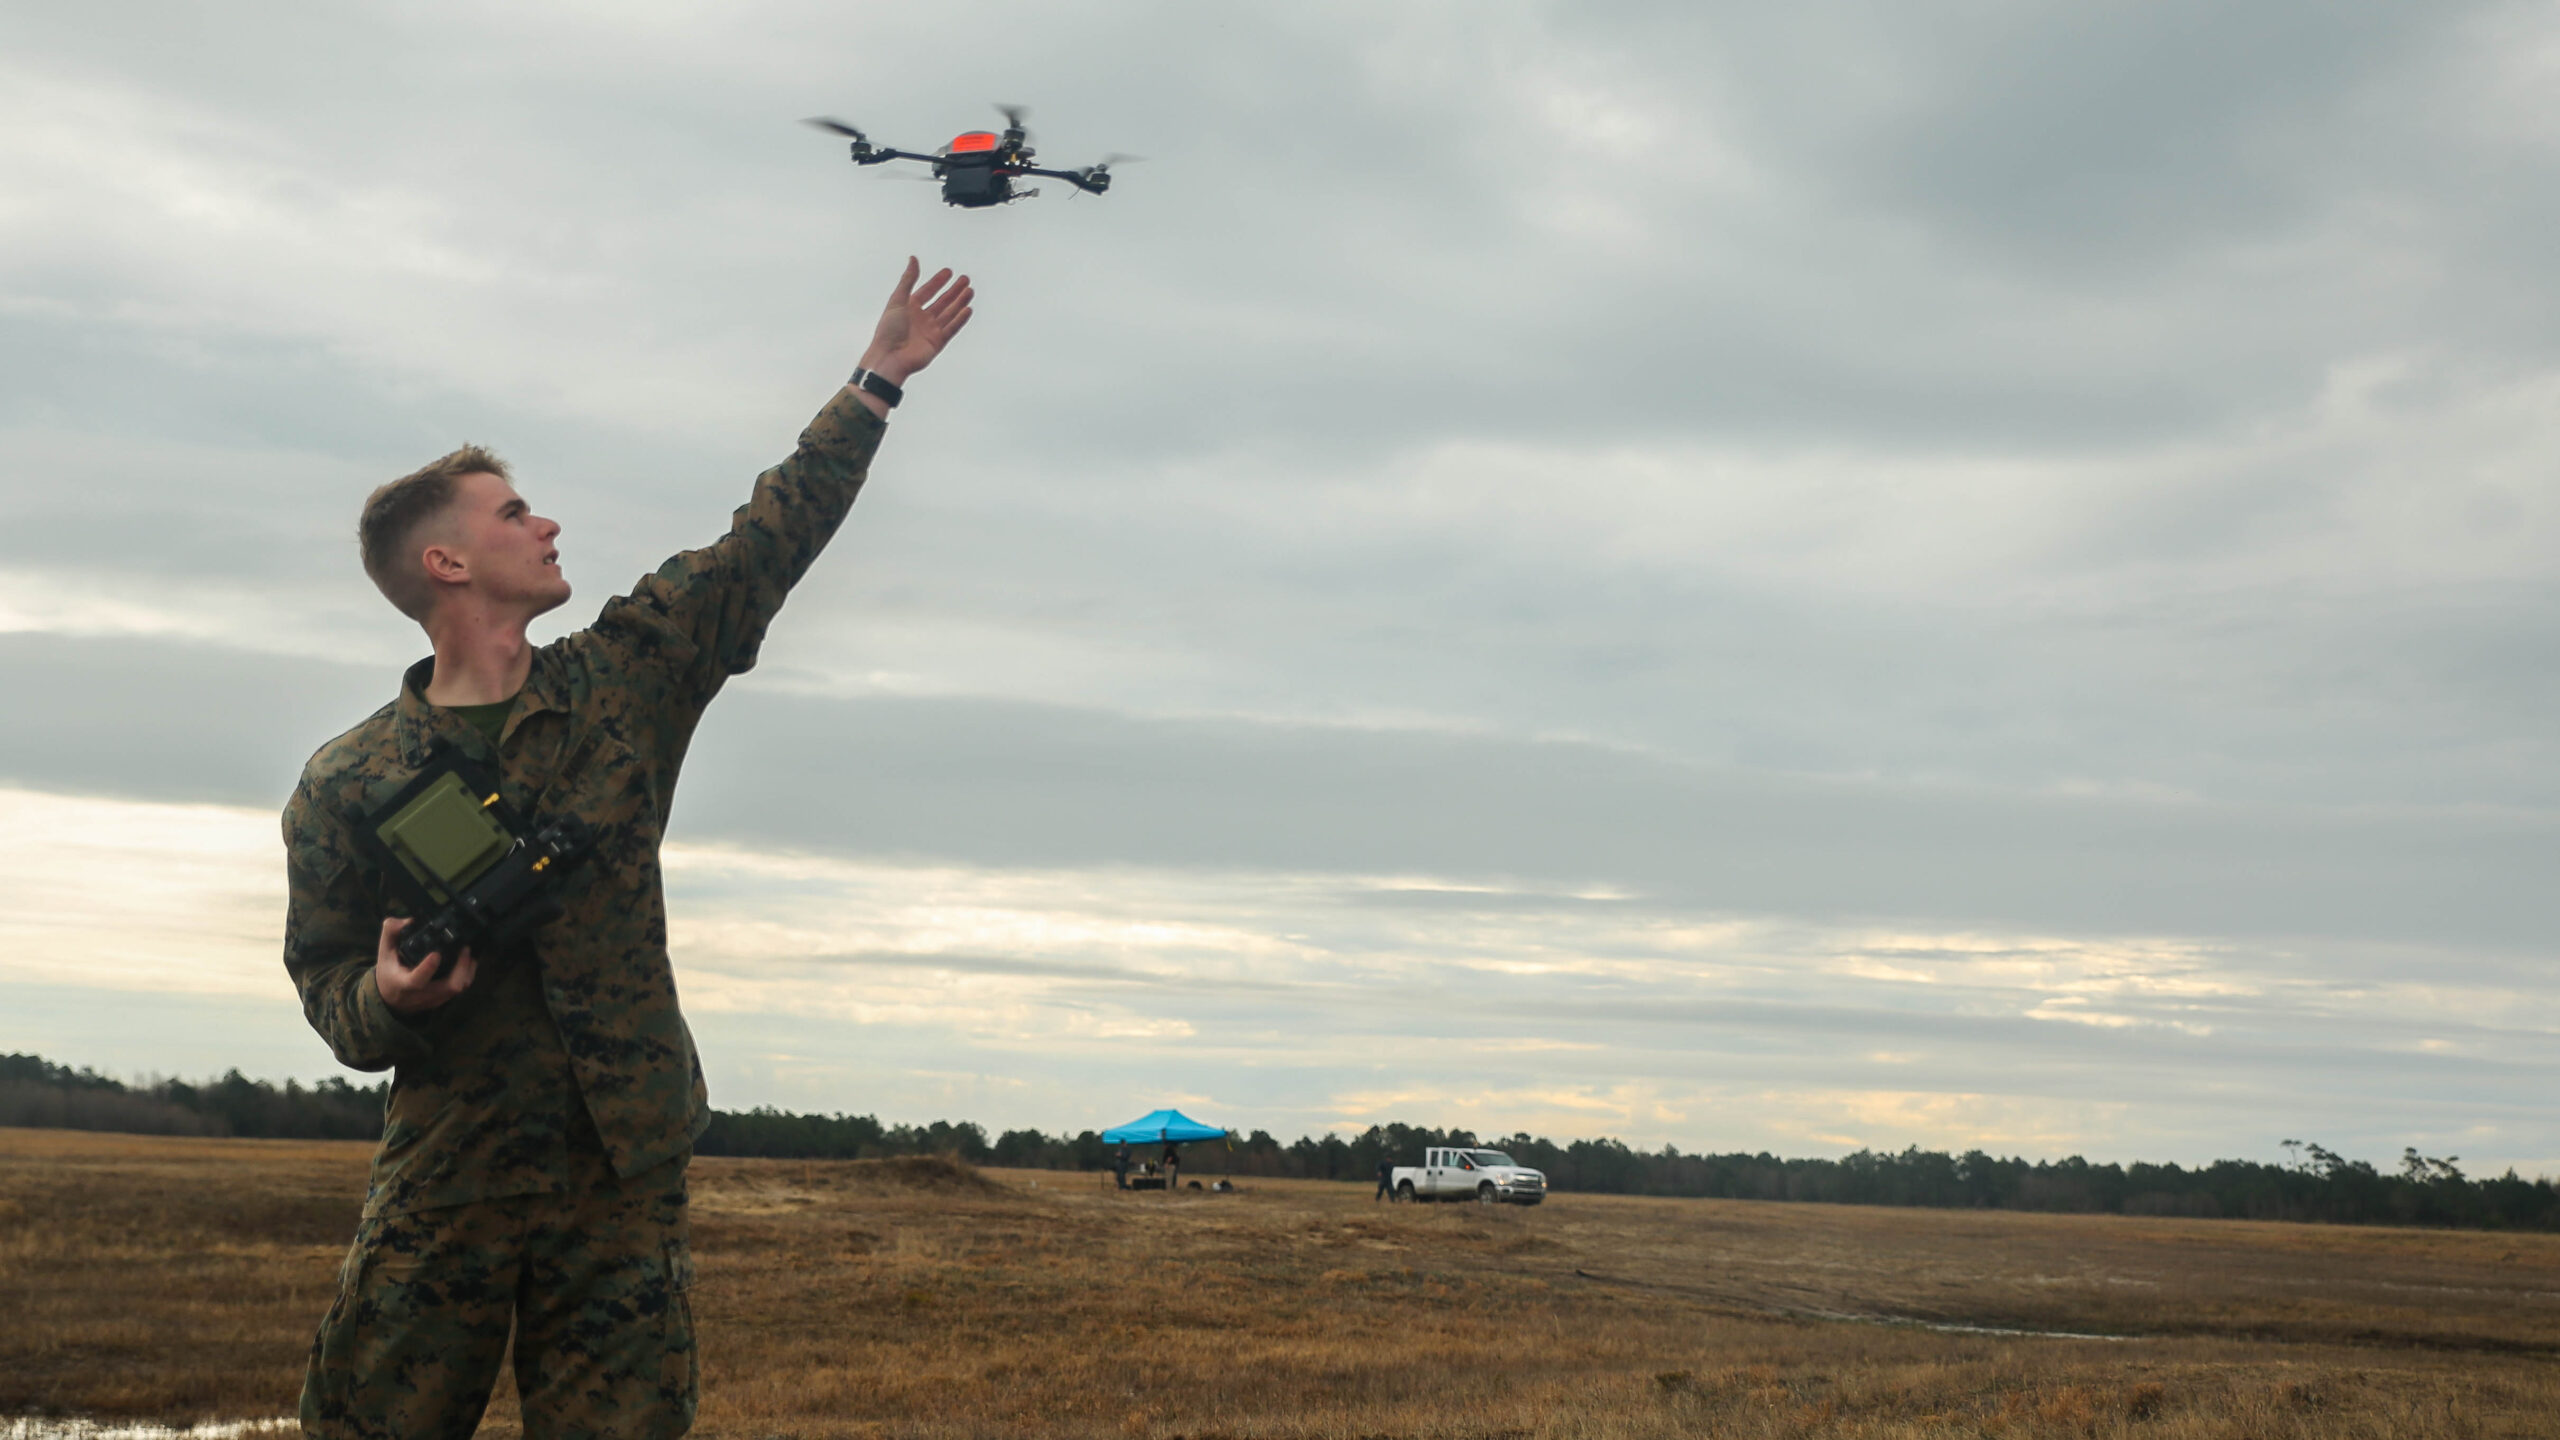 Military Micro Drone, Military Mini Drone, Military Nano Drone